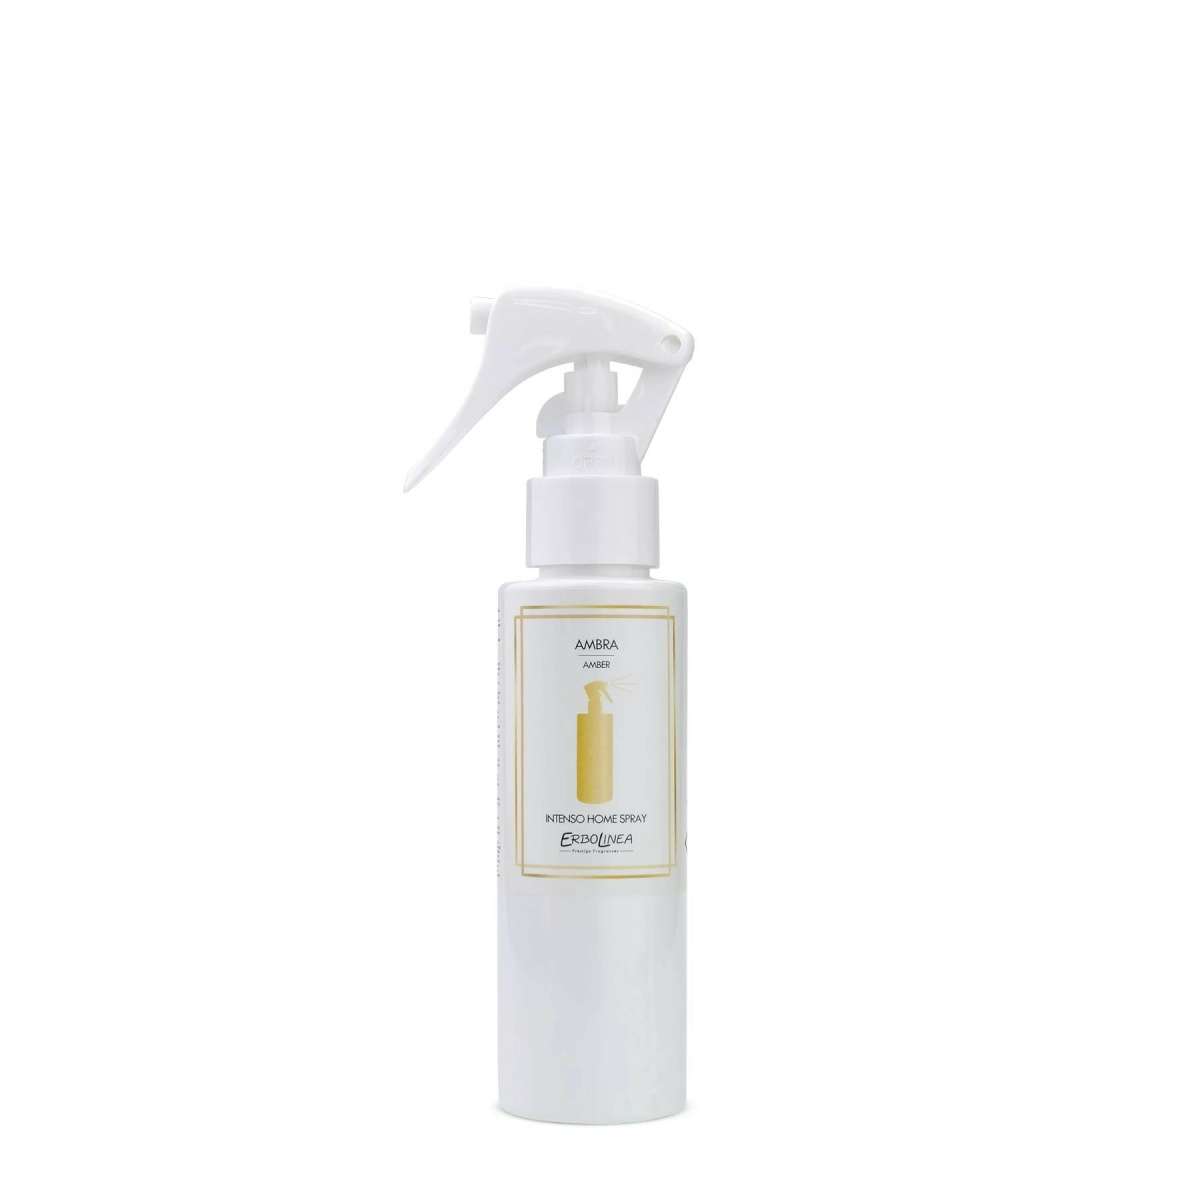 Immagine del prodotto Home Spray per Ambiente Ambra 100 ml | Erbolinea Prestige